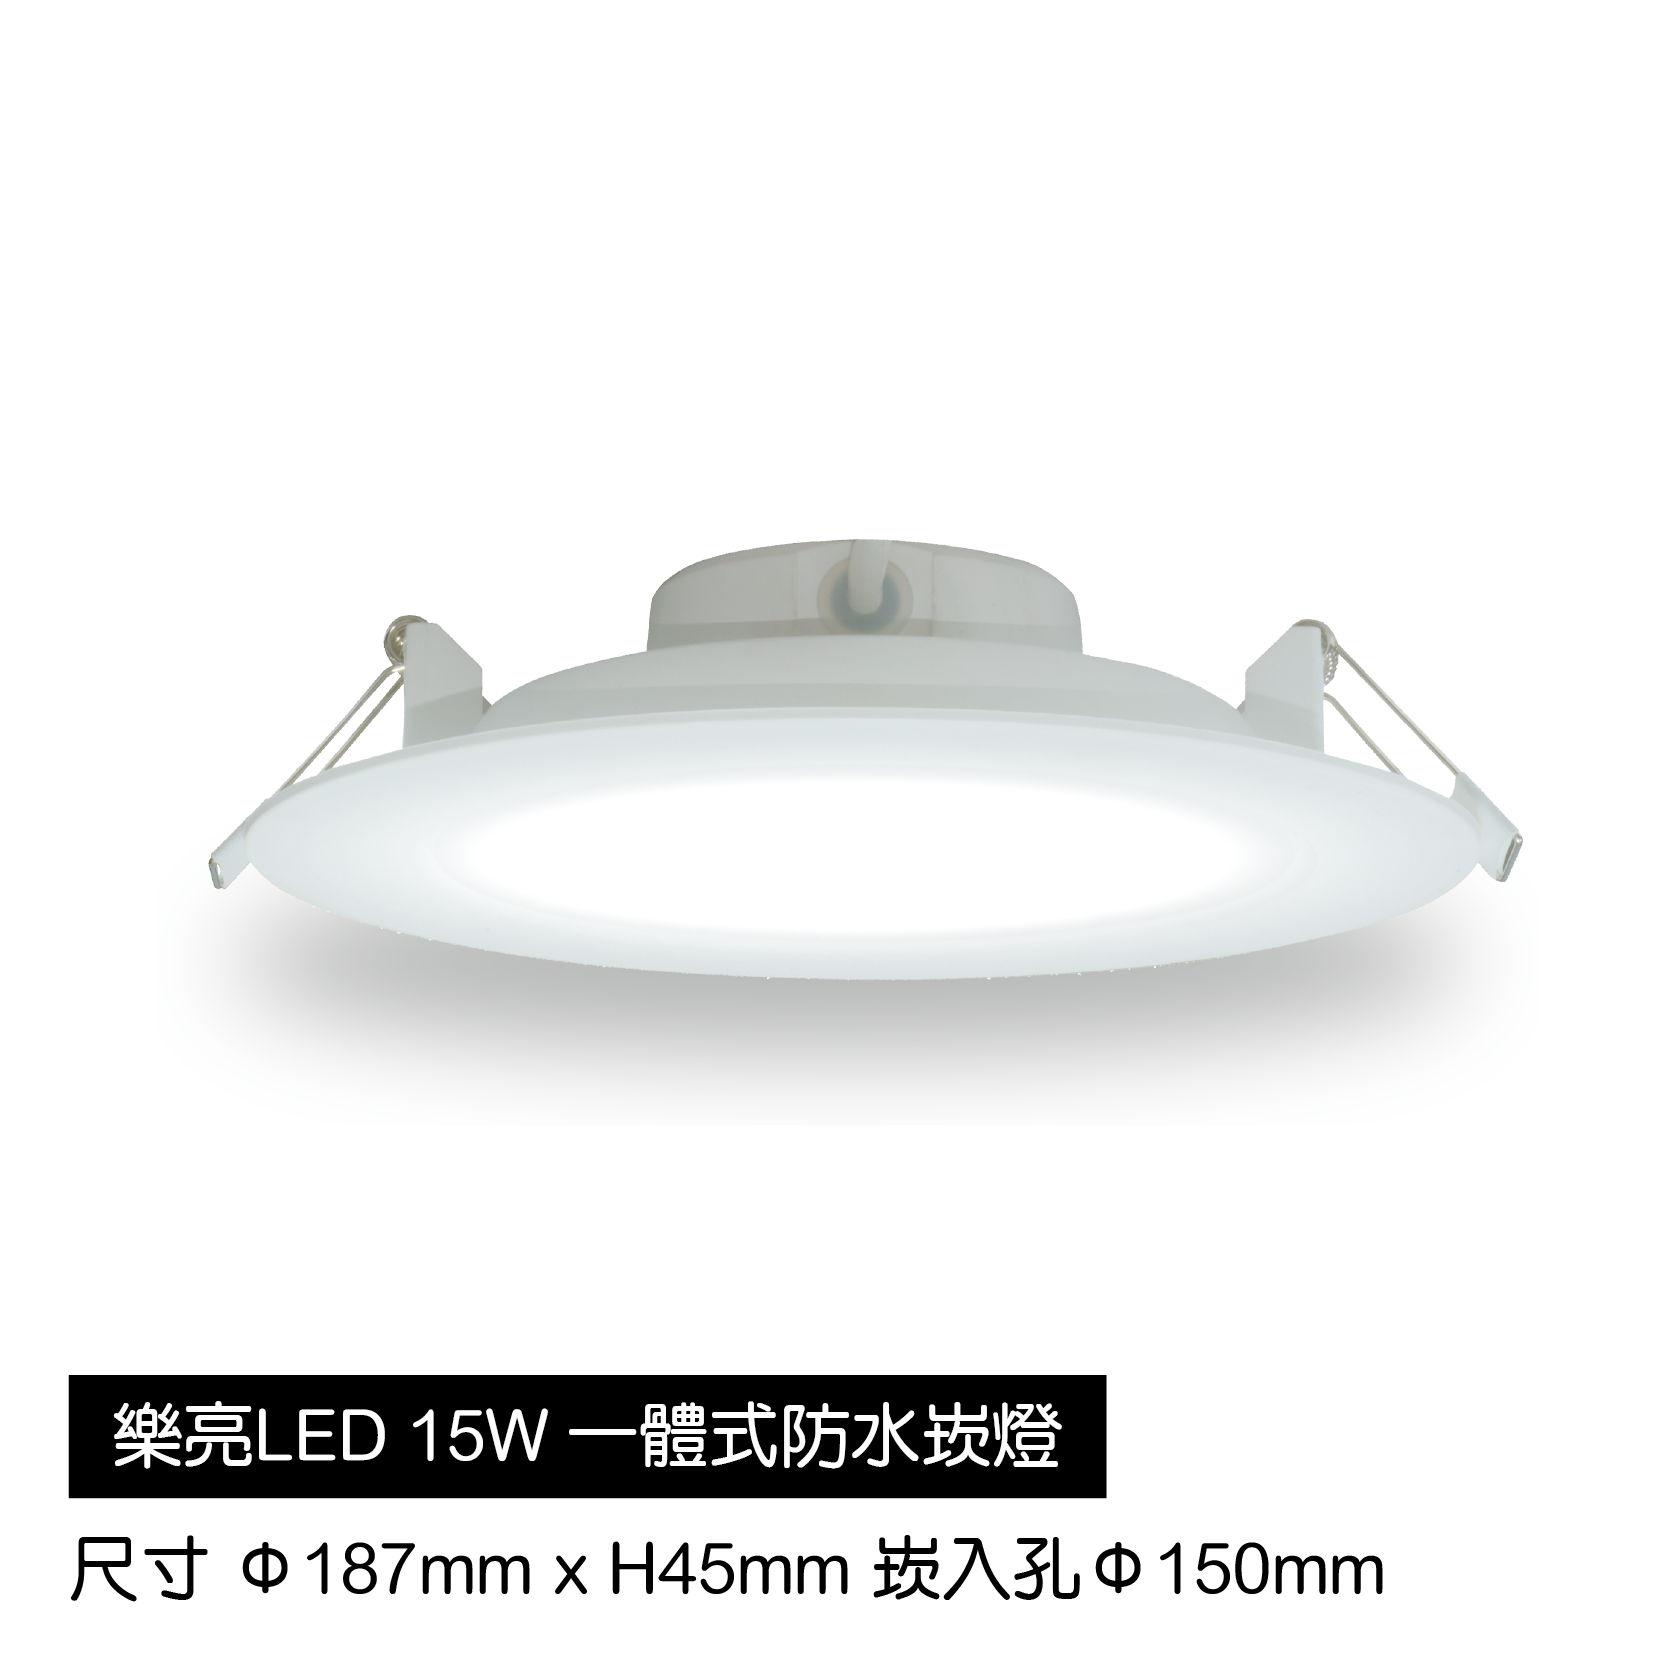 LED-15W一體式防水崁燈